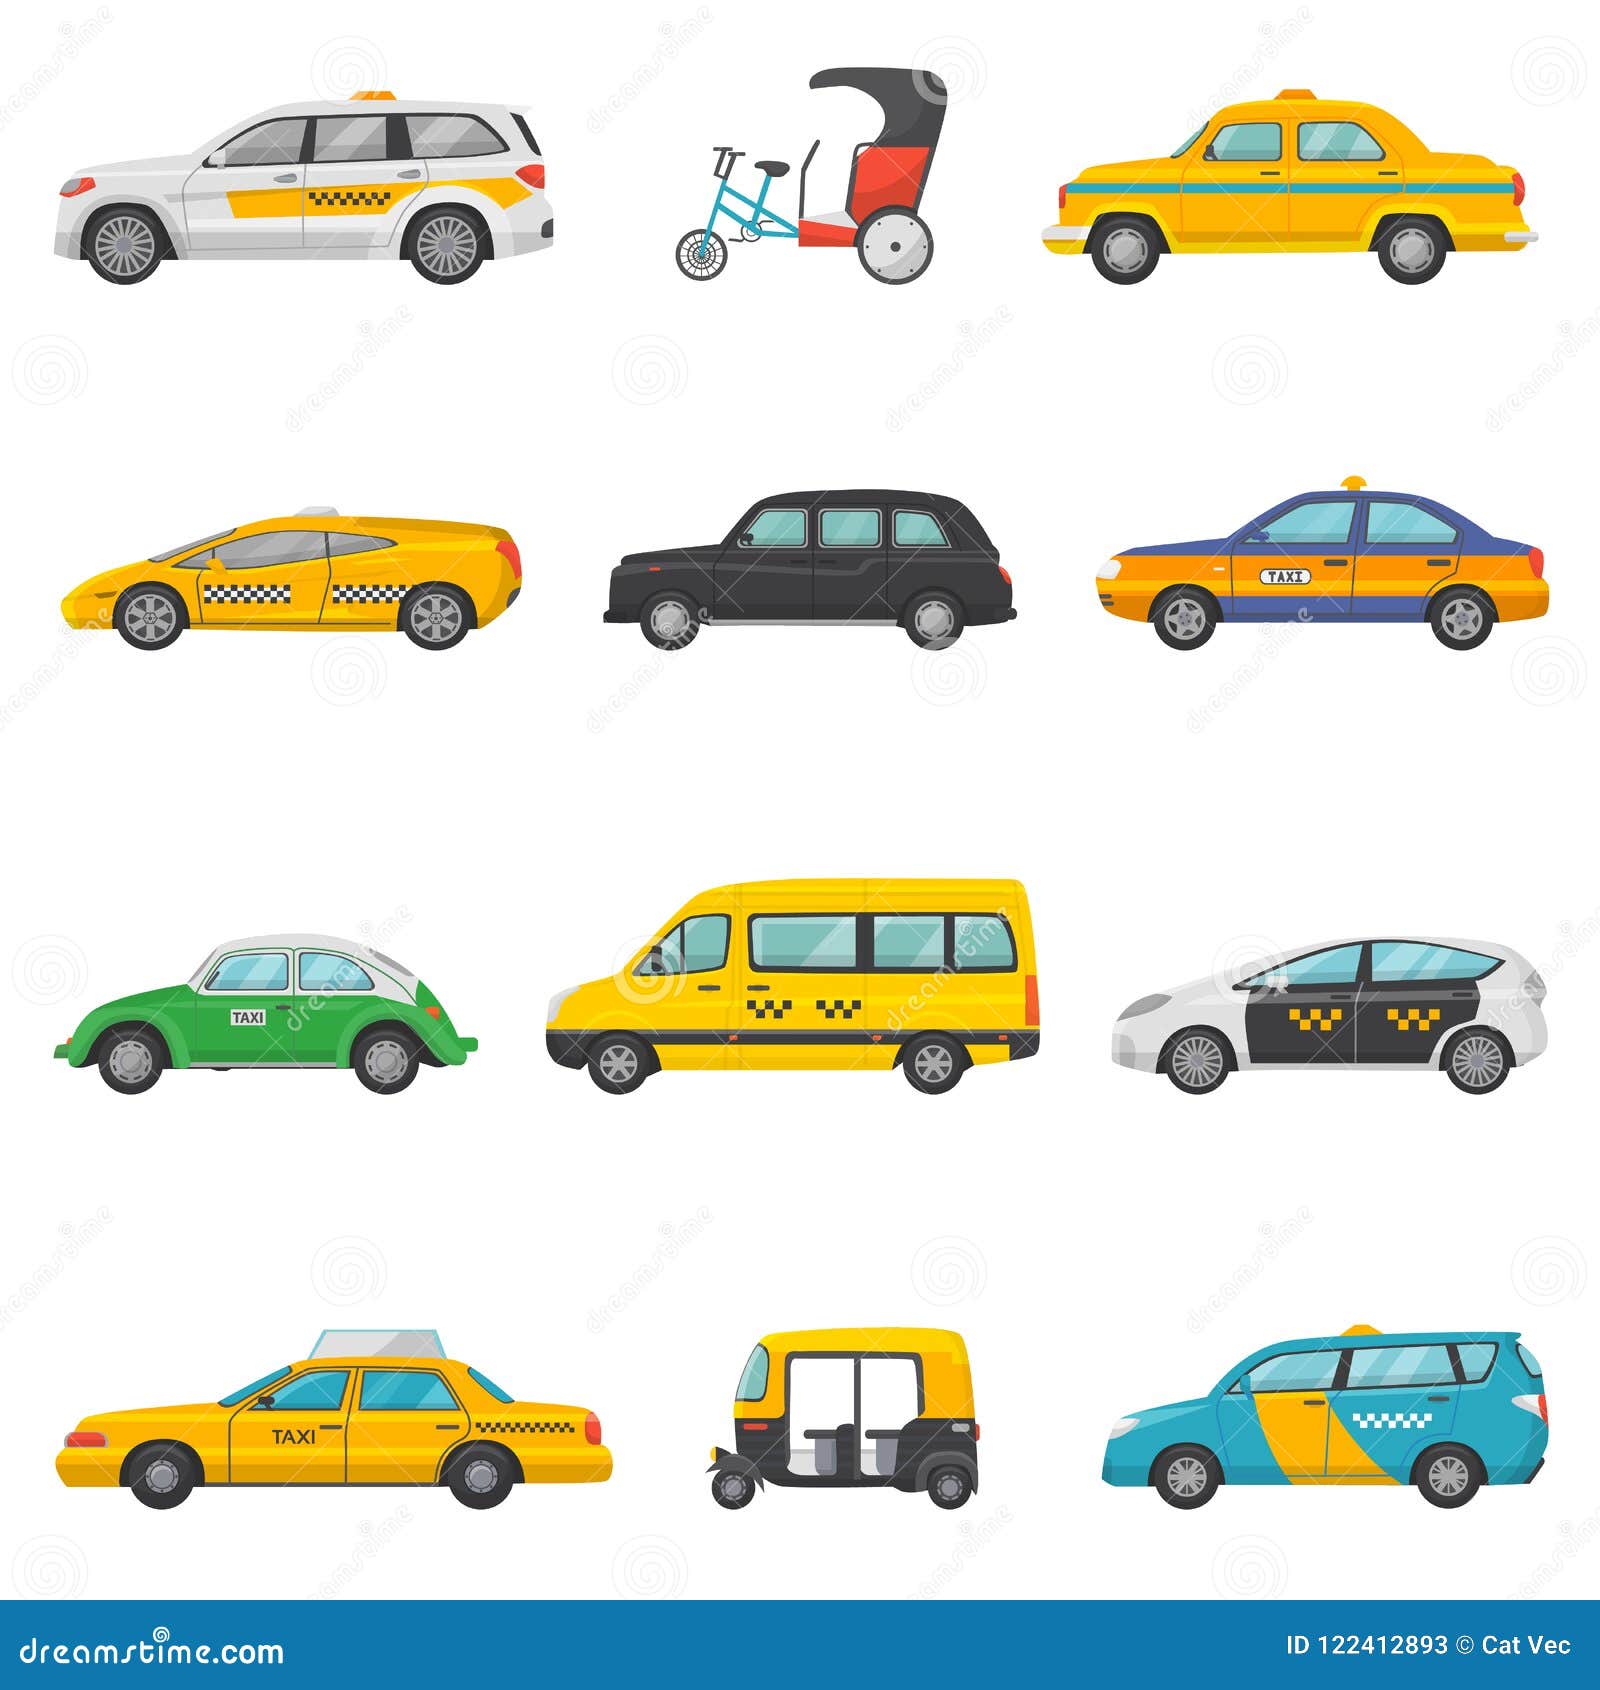 Taxiauto Stock Vektor Art und mehr Bilder von Taxi - Taxi, Vektor